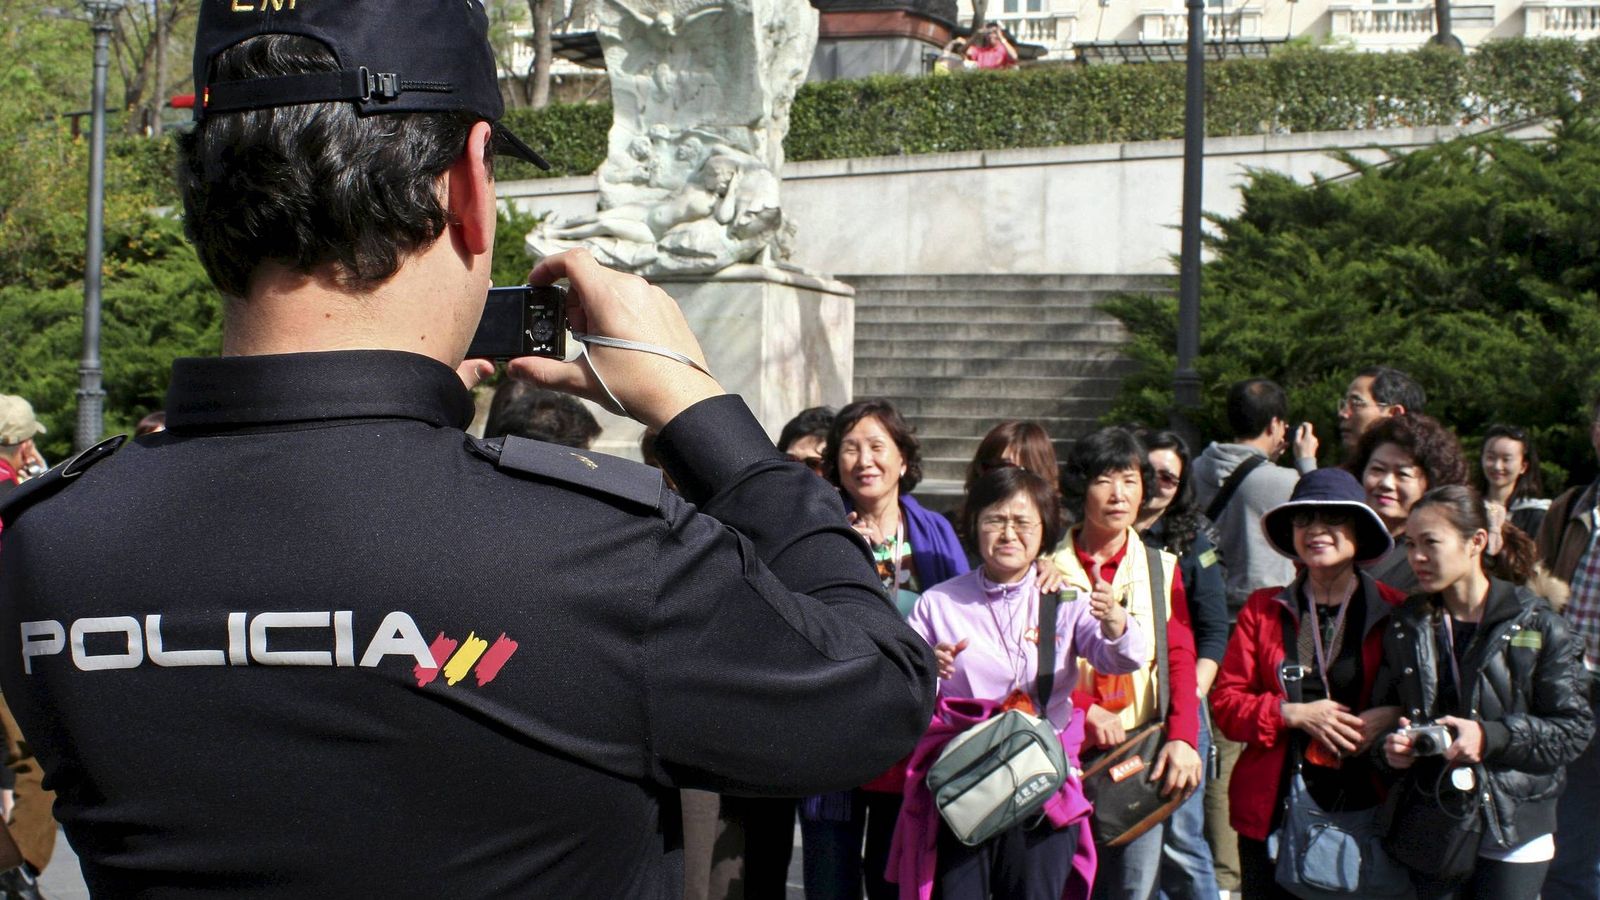 Foto: Imagen facilitada por la Policía Nacional de un miembro del Cuerpo haciendo una fotografía a un grupo de japoneses. (Efe)